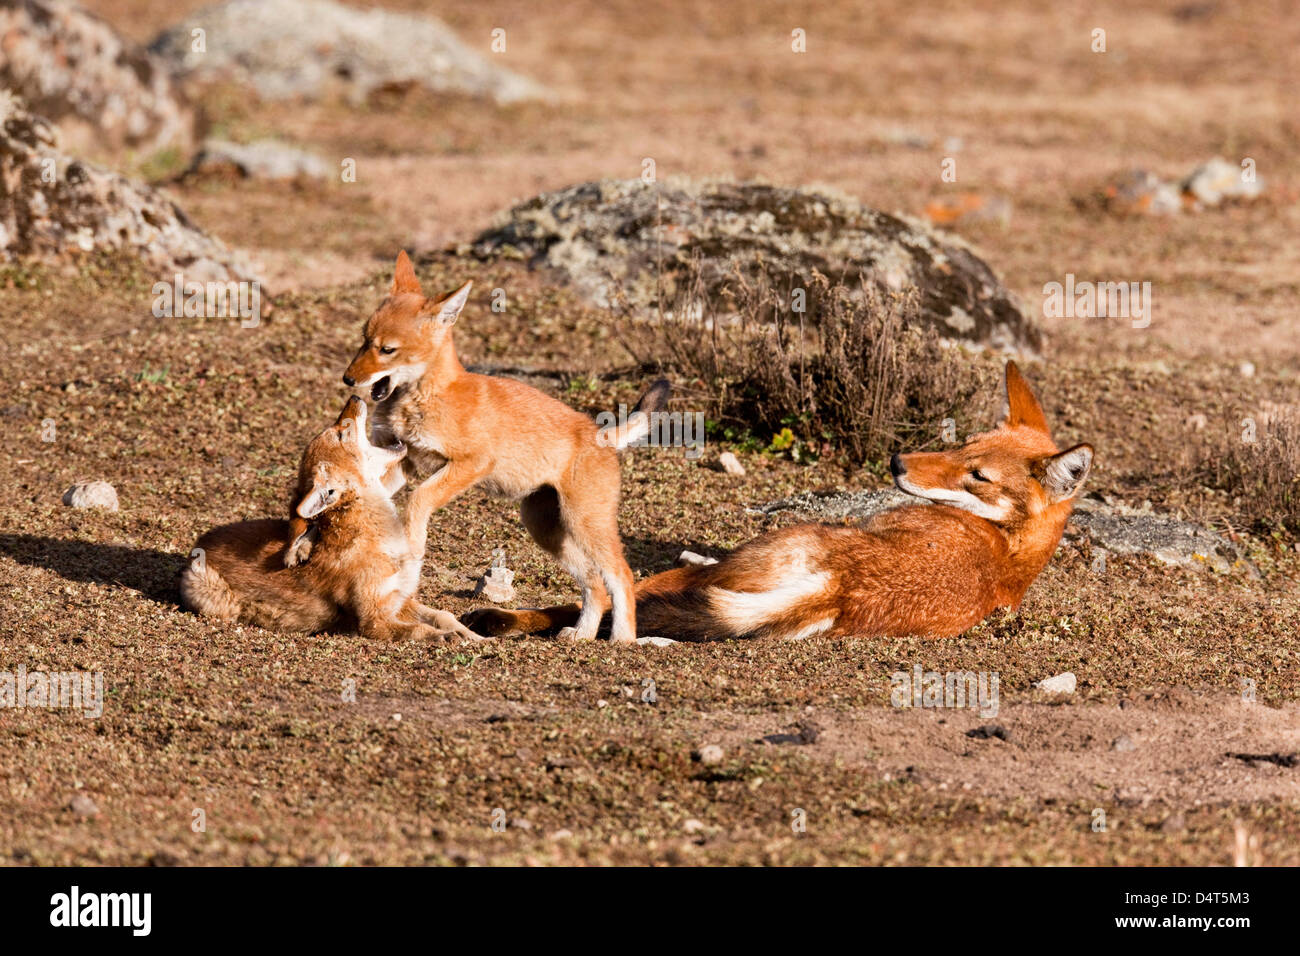 Ethiopian Wolf (Canis simensis), Bale Mountains National Park, Ethiopia Stock Photo